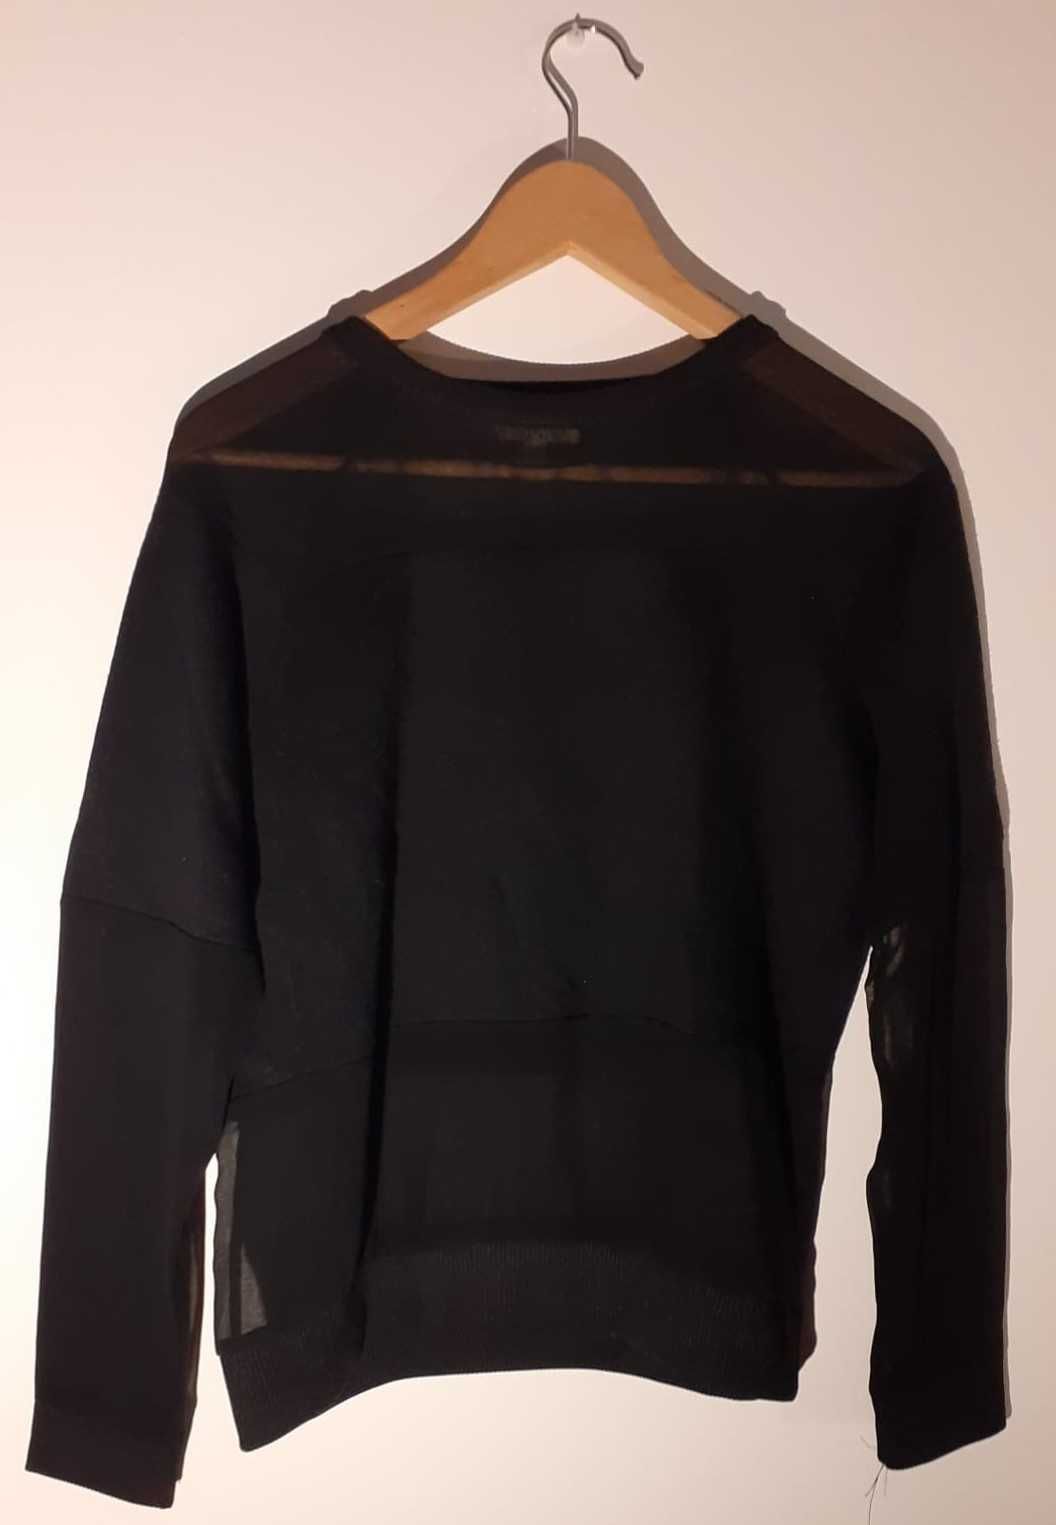 Camisola preta com transparências da Zara